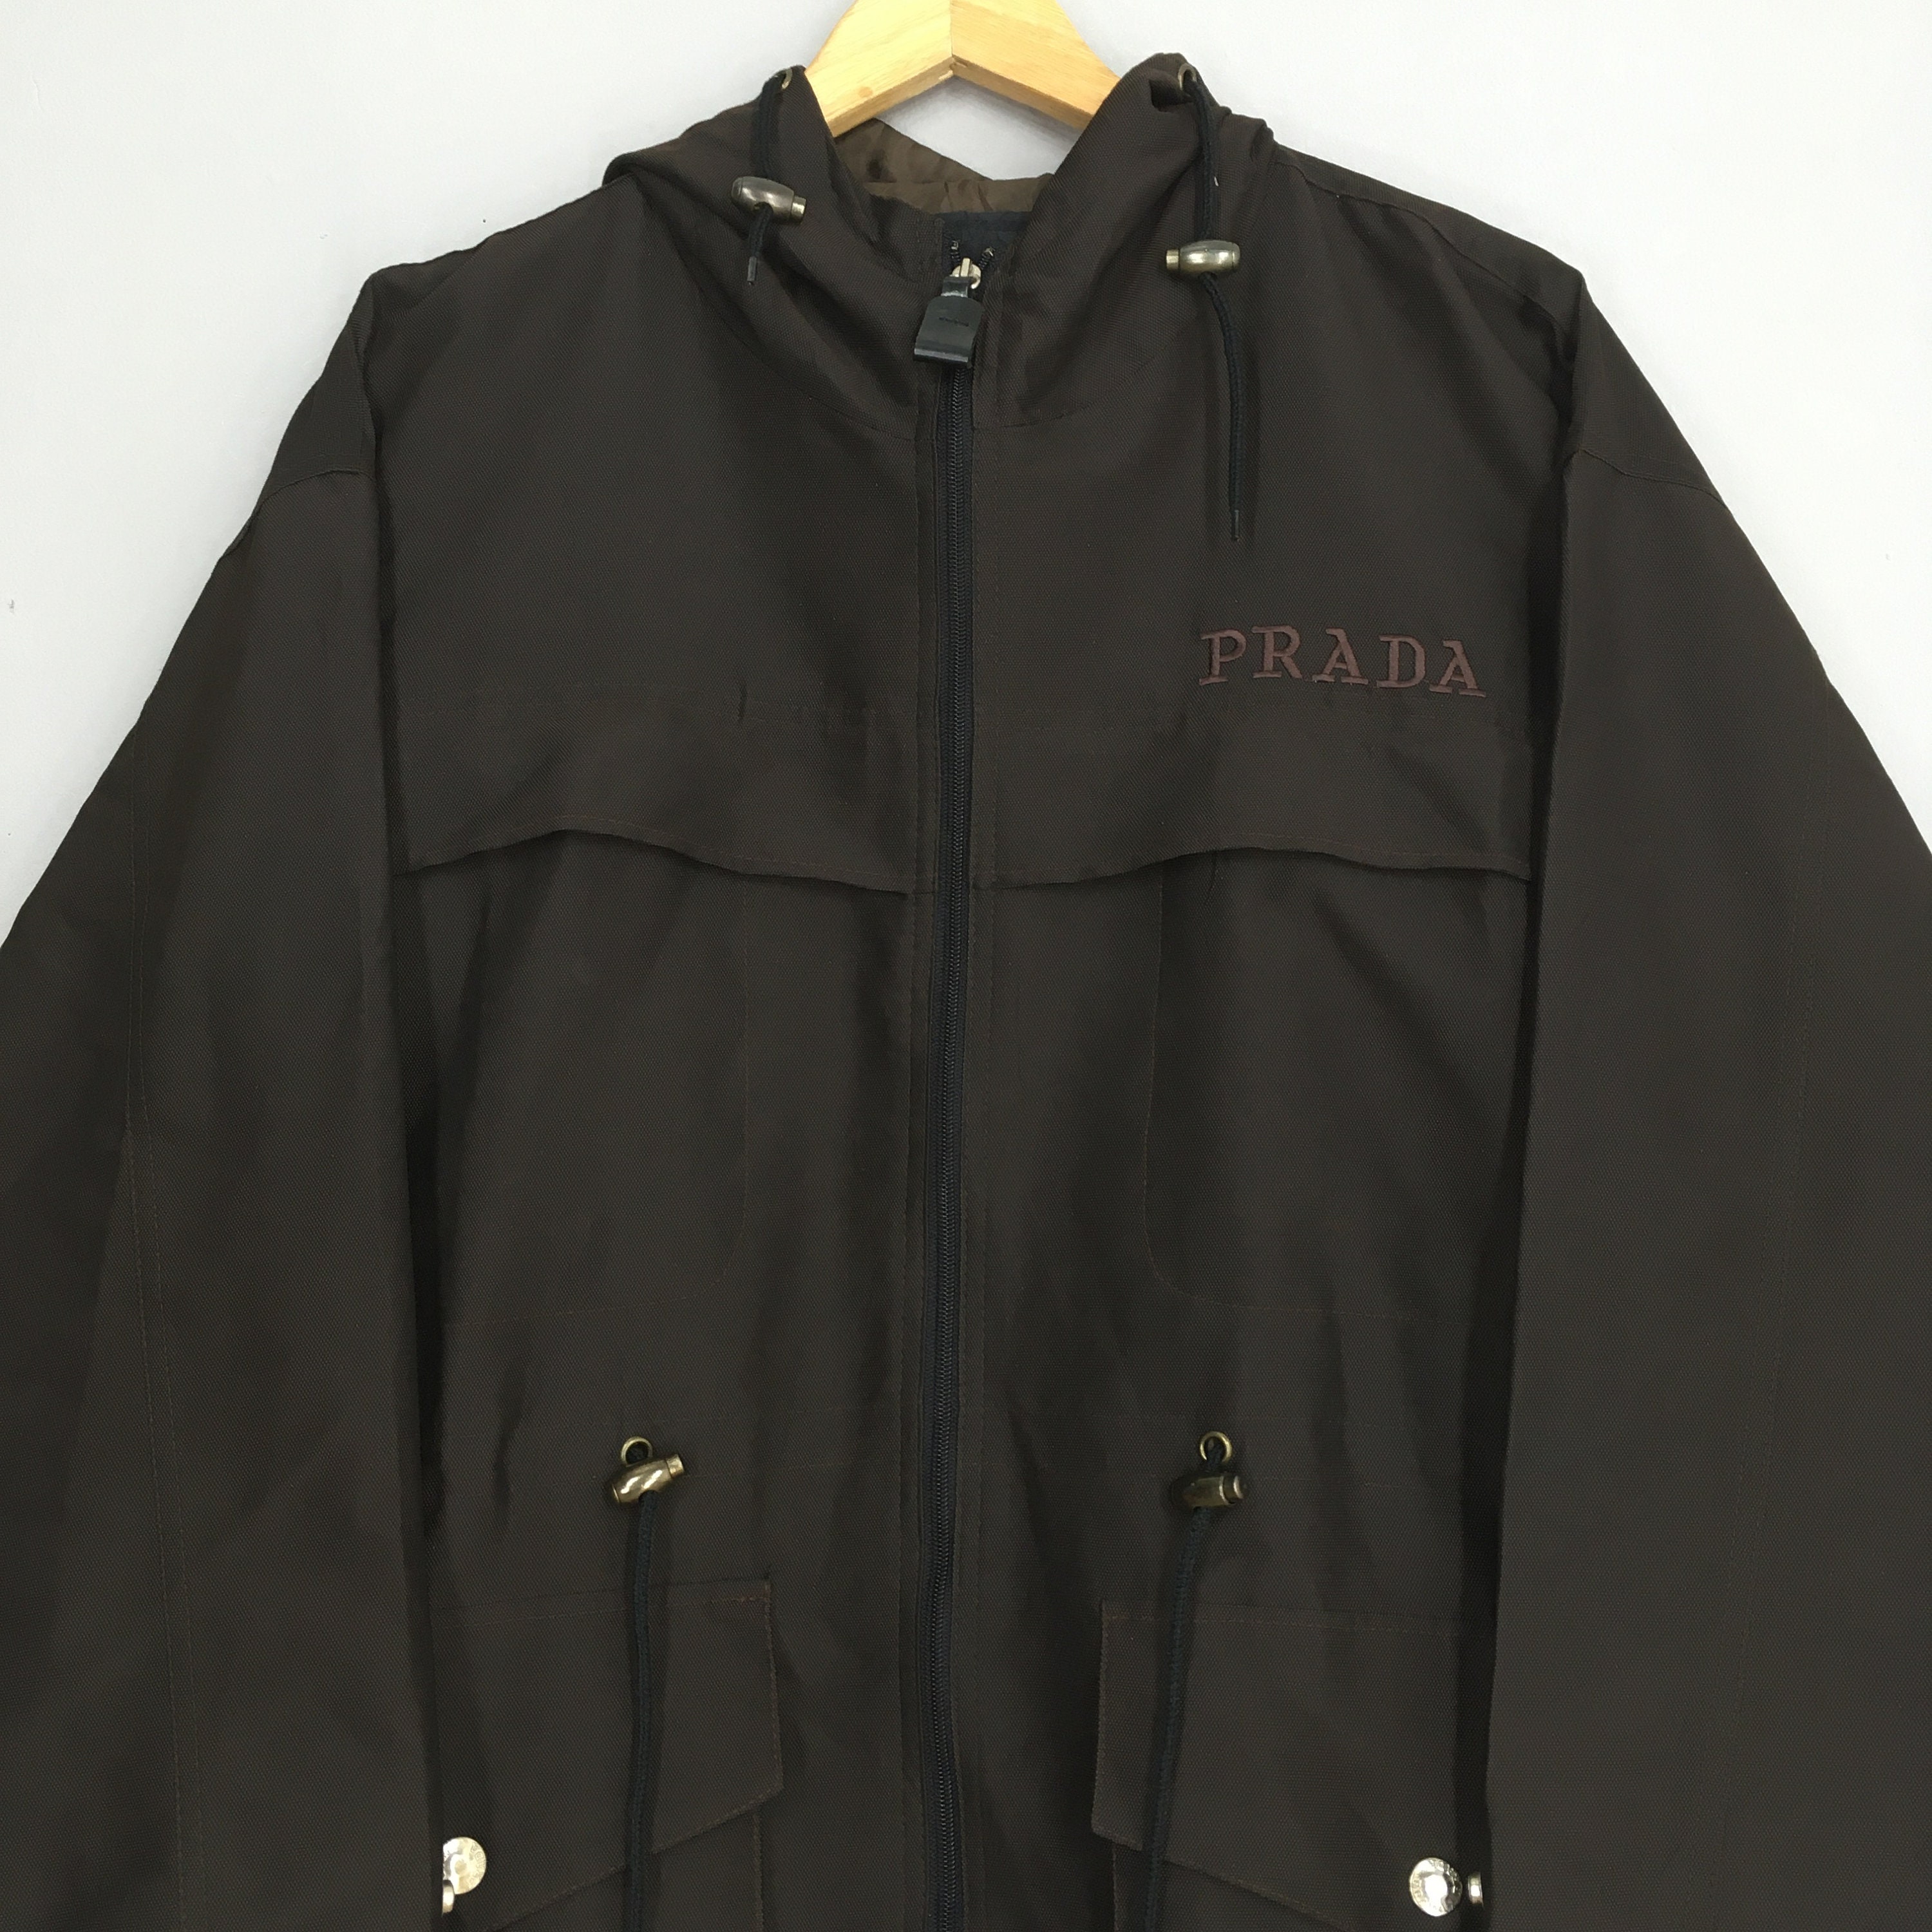 Vintage Prada Milano Black Hoodie Jacket Xlarge Vintage Prada - Etsy Finland